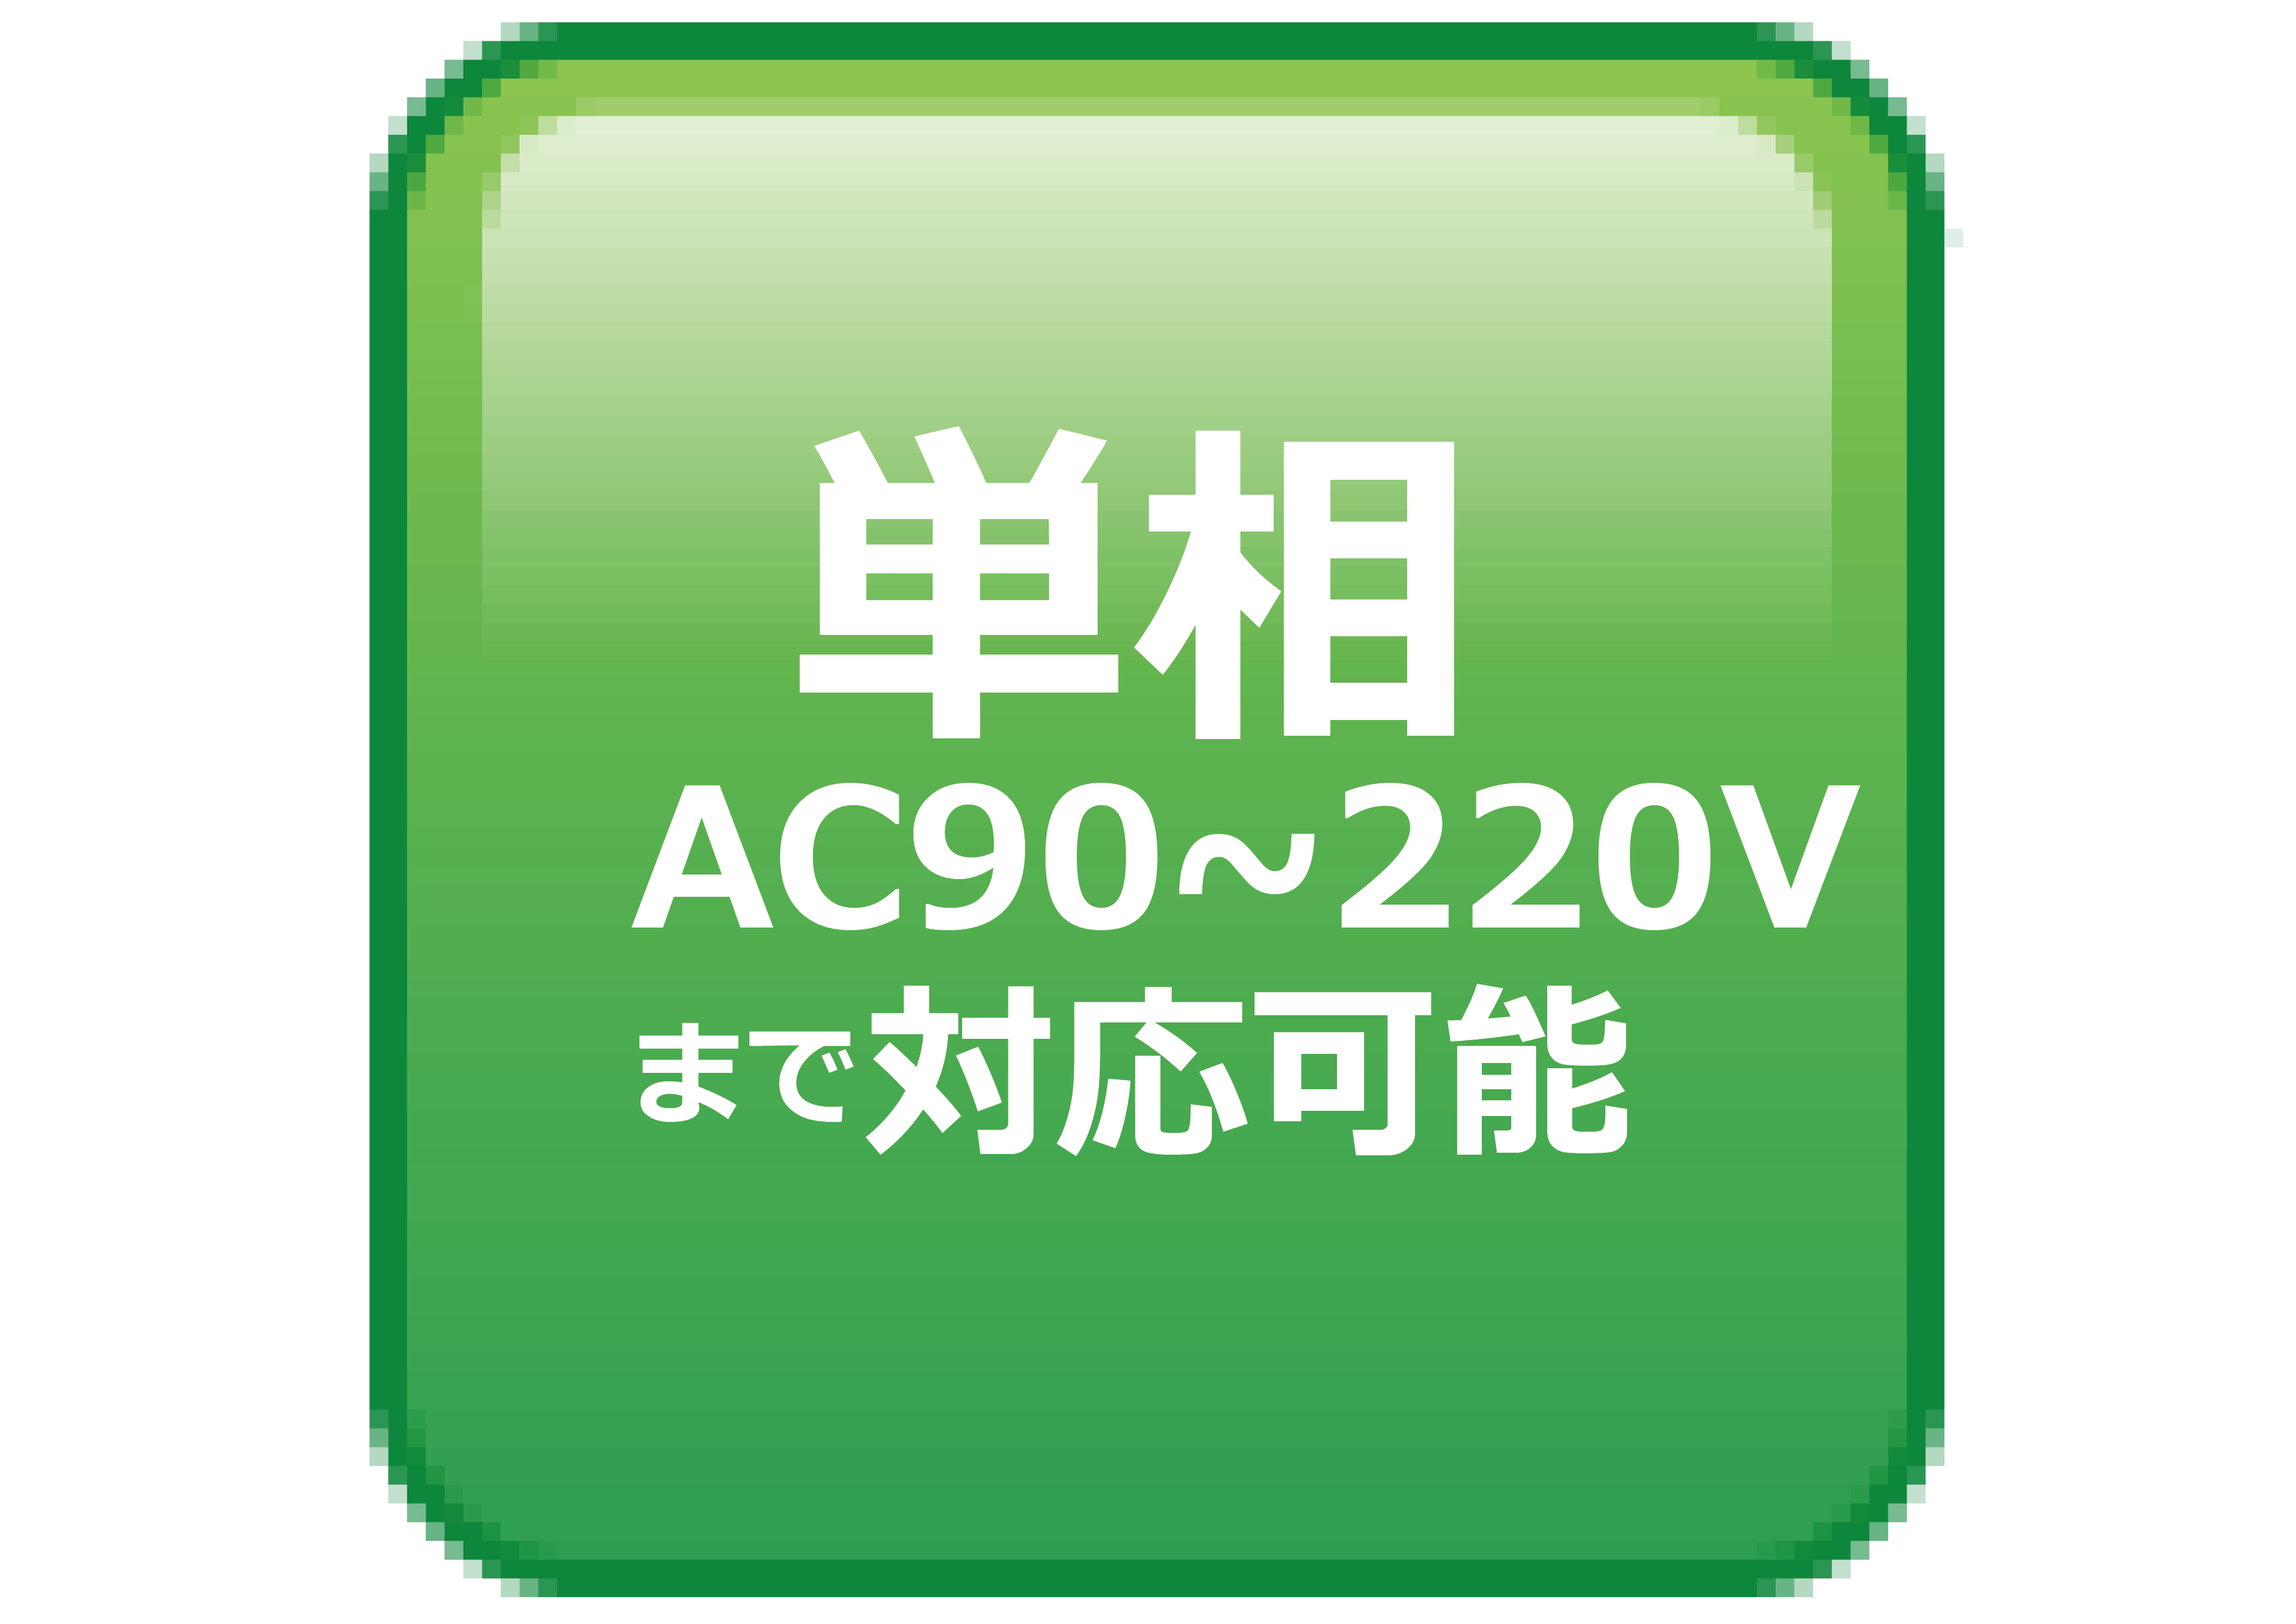 単相AC90~220Vまで対応可能